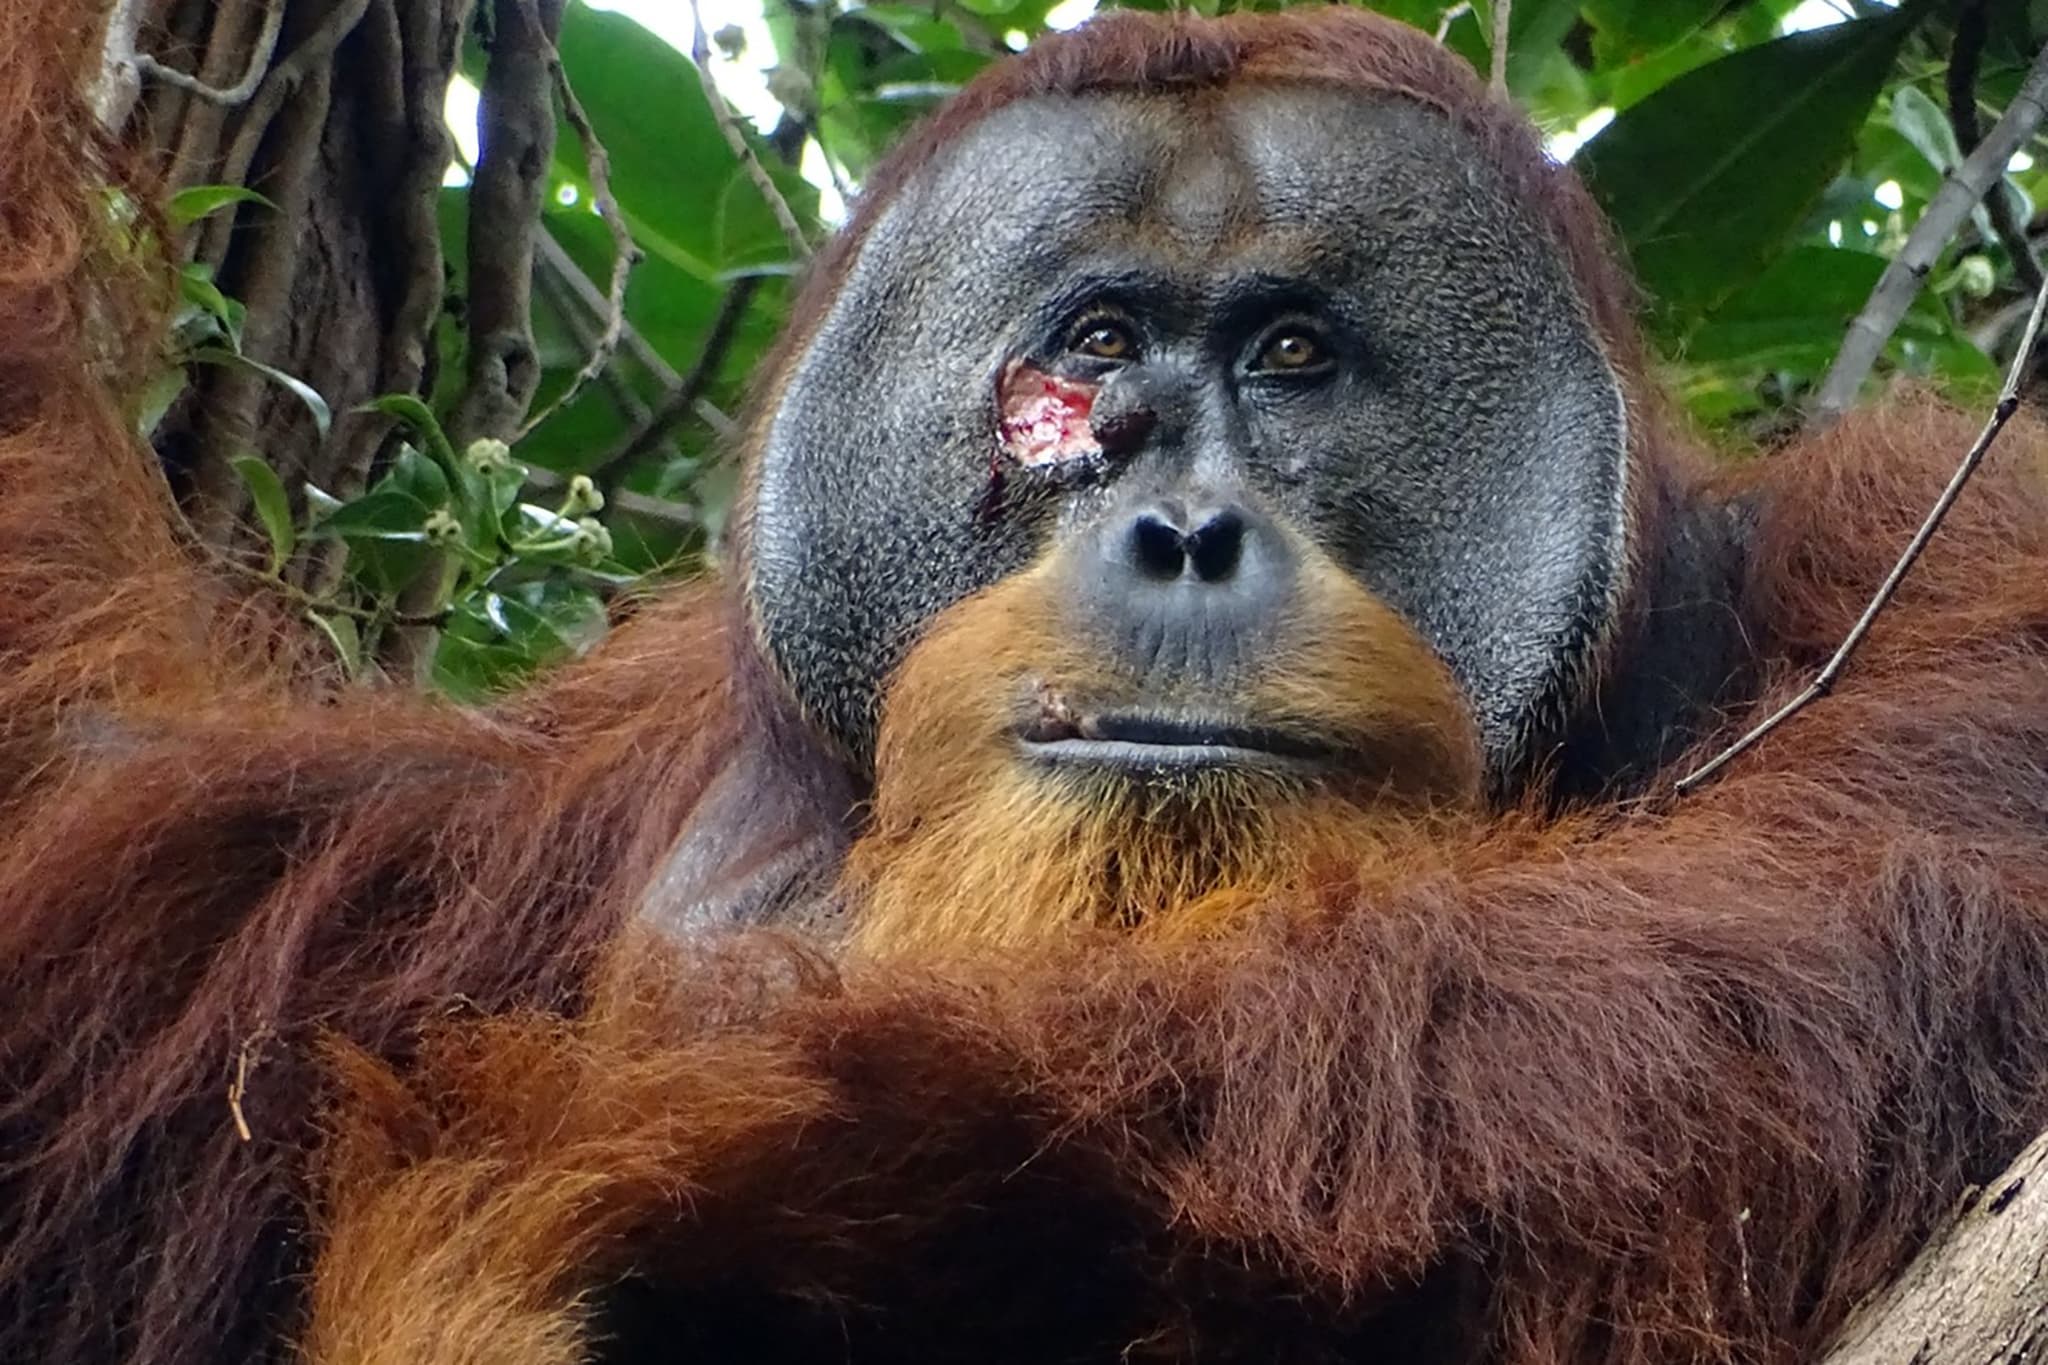 blessé, un orang-outang se fait un pansement à l'aide de plantes médicinales, une première